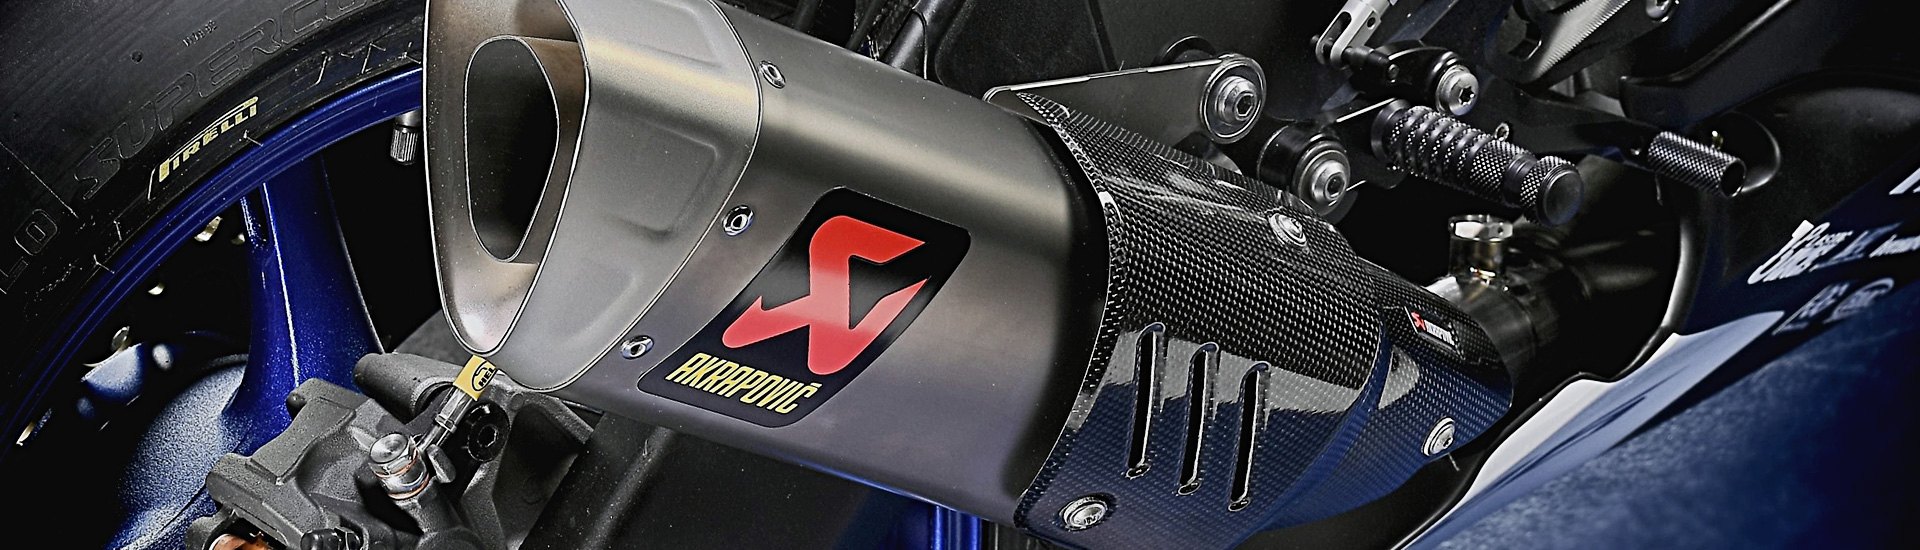 Kawasaki Ninja ZX-11 Exhaust Parts | Mufflers, Slip-Ons, Pipes 